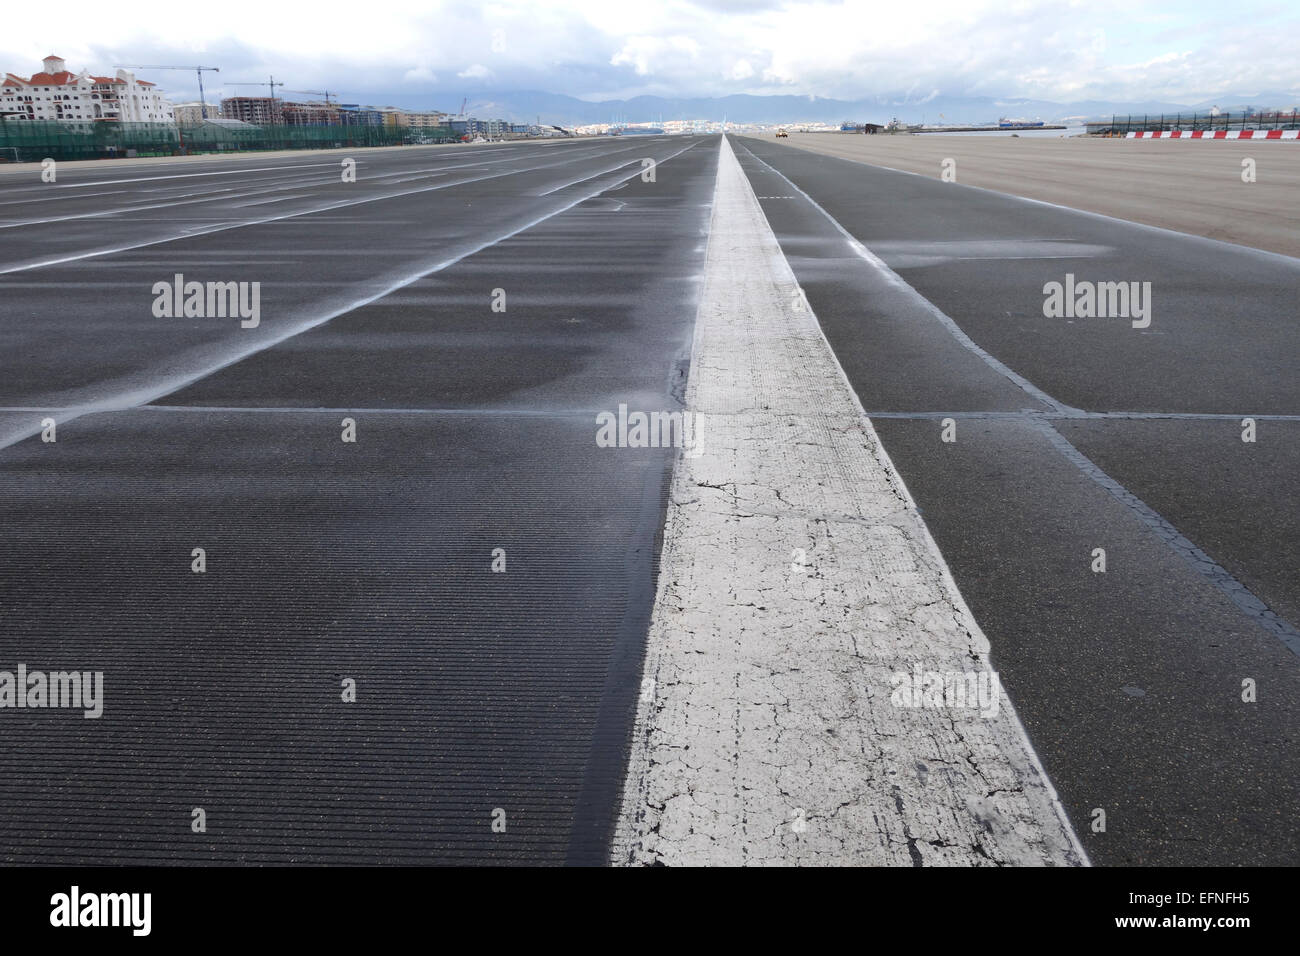 La piste de l'aéroport de Gibraltar à la frontière de l'Espagne d'entrer dans Gibraltar. Uk. United Kingdom. Banque D'Images